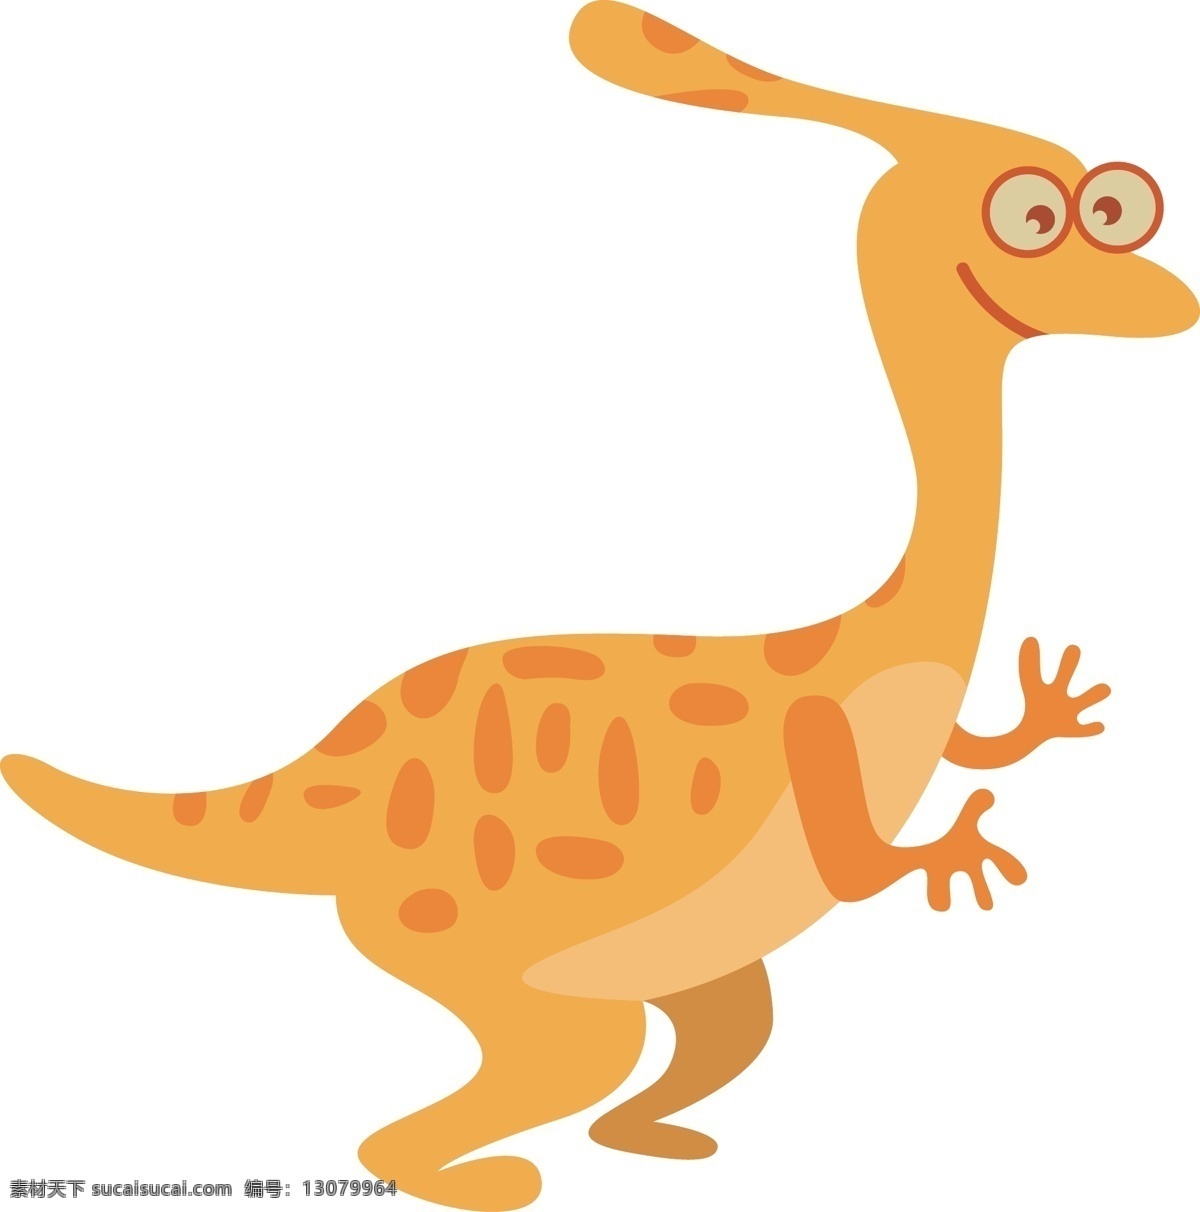 卡通 恐龙 动物 元素 卡通恐龙动物 卡通恐龙 可爱恐龙 恐龙图案 卡通图案 儿童恐龙 恐龙装饰 可爱恐龙图案